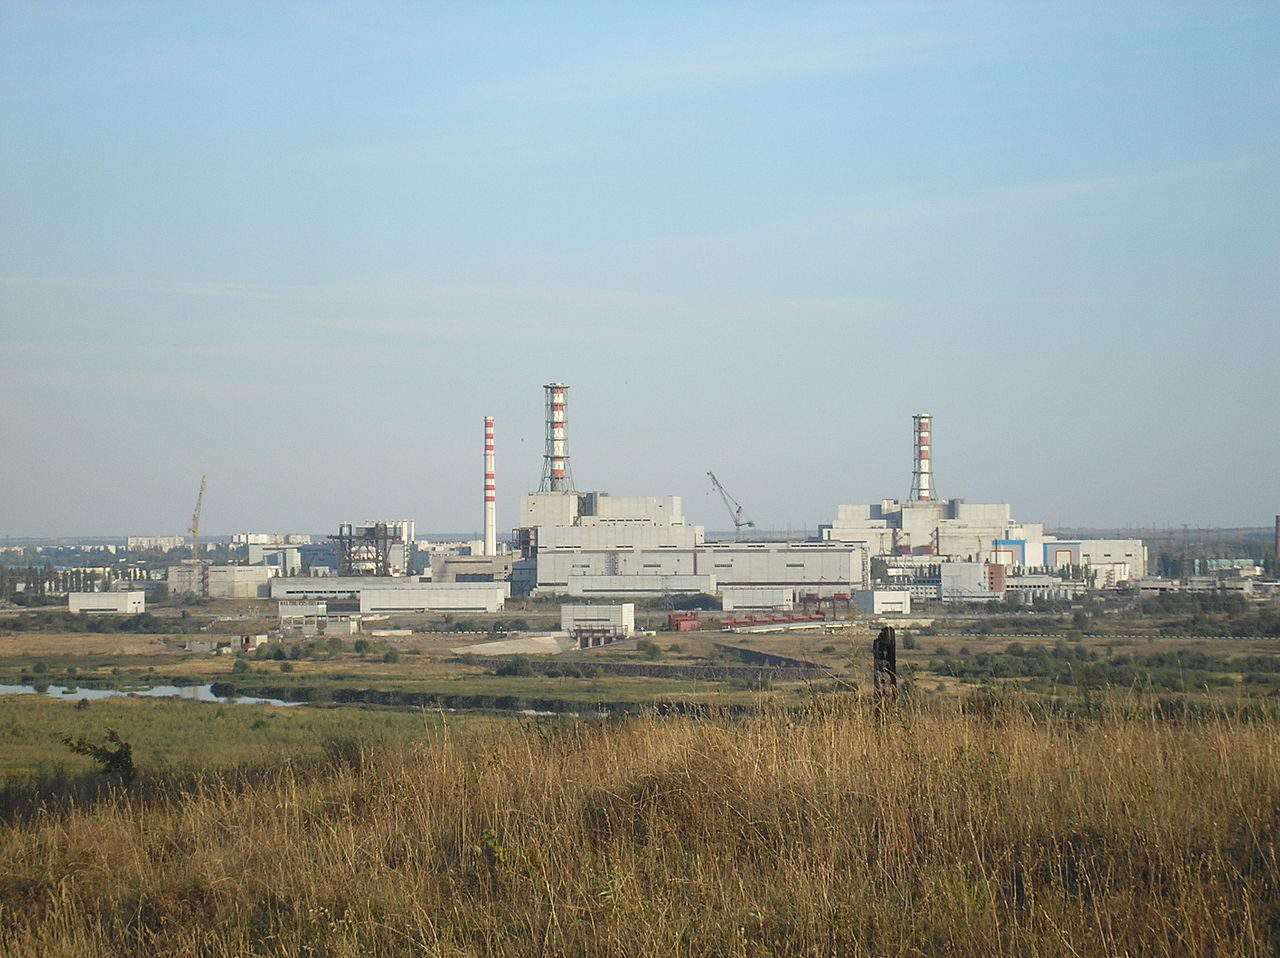 Kursk nuclear power plant